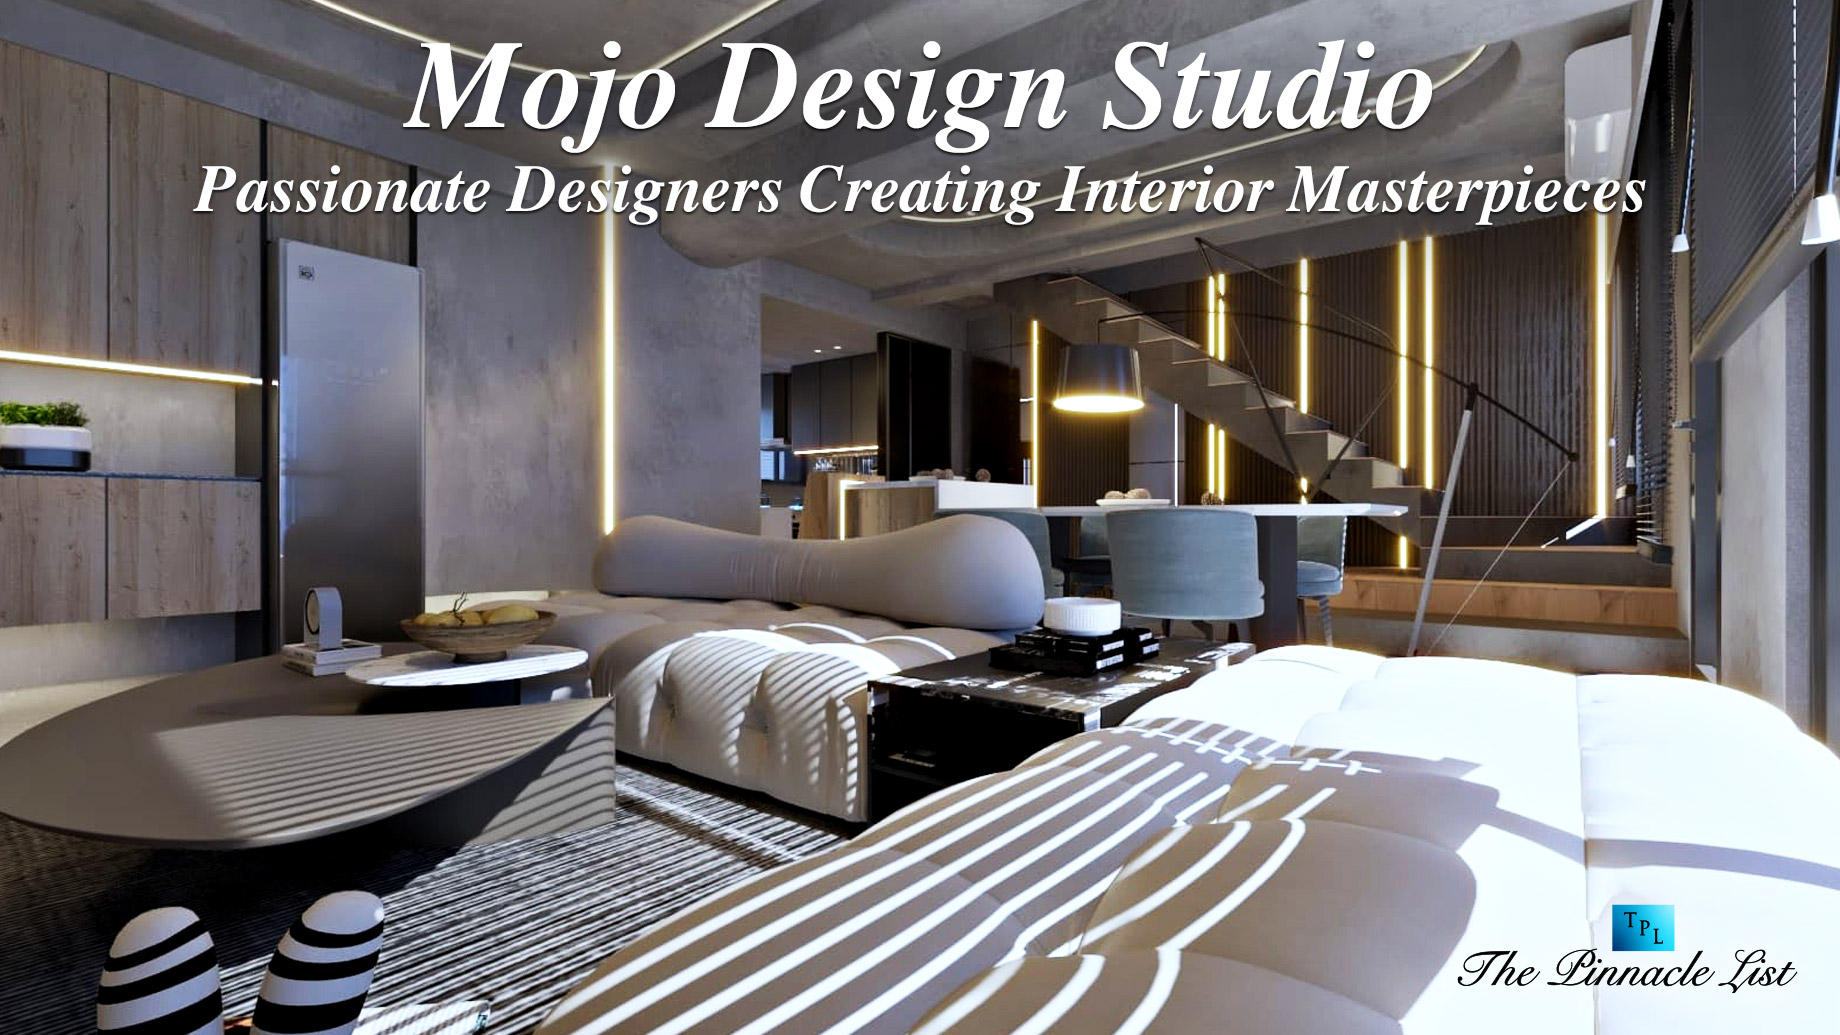 Mojo Design Studio – Passionate Designers Creating Interior Masterpieces